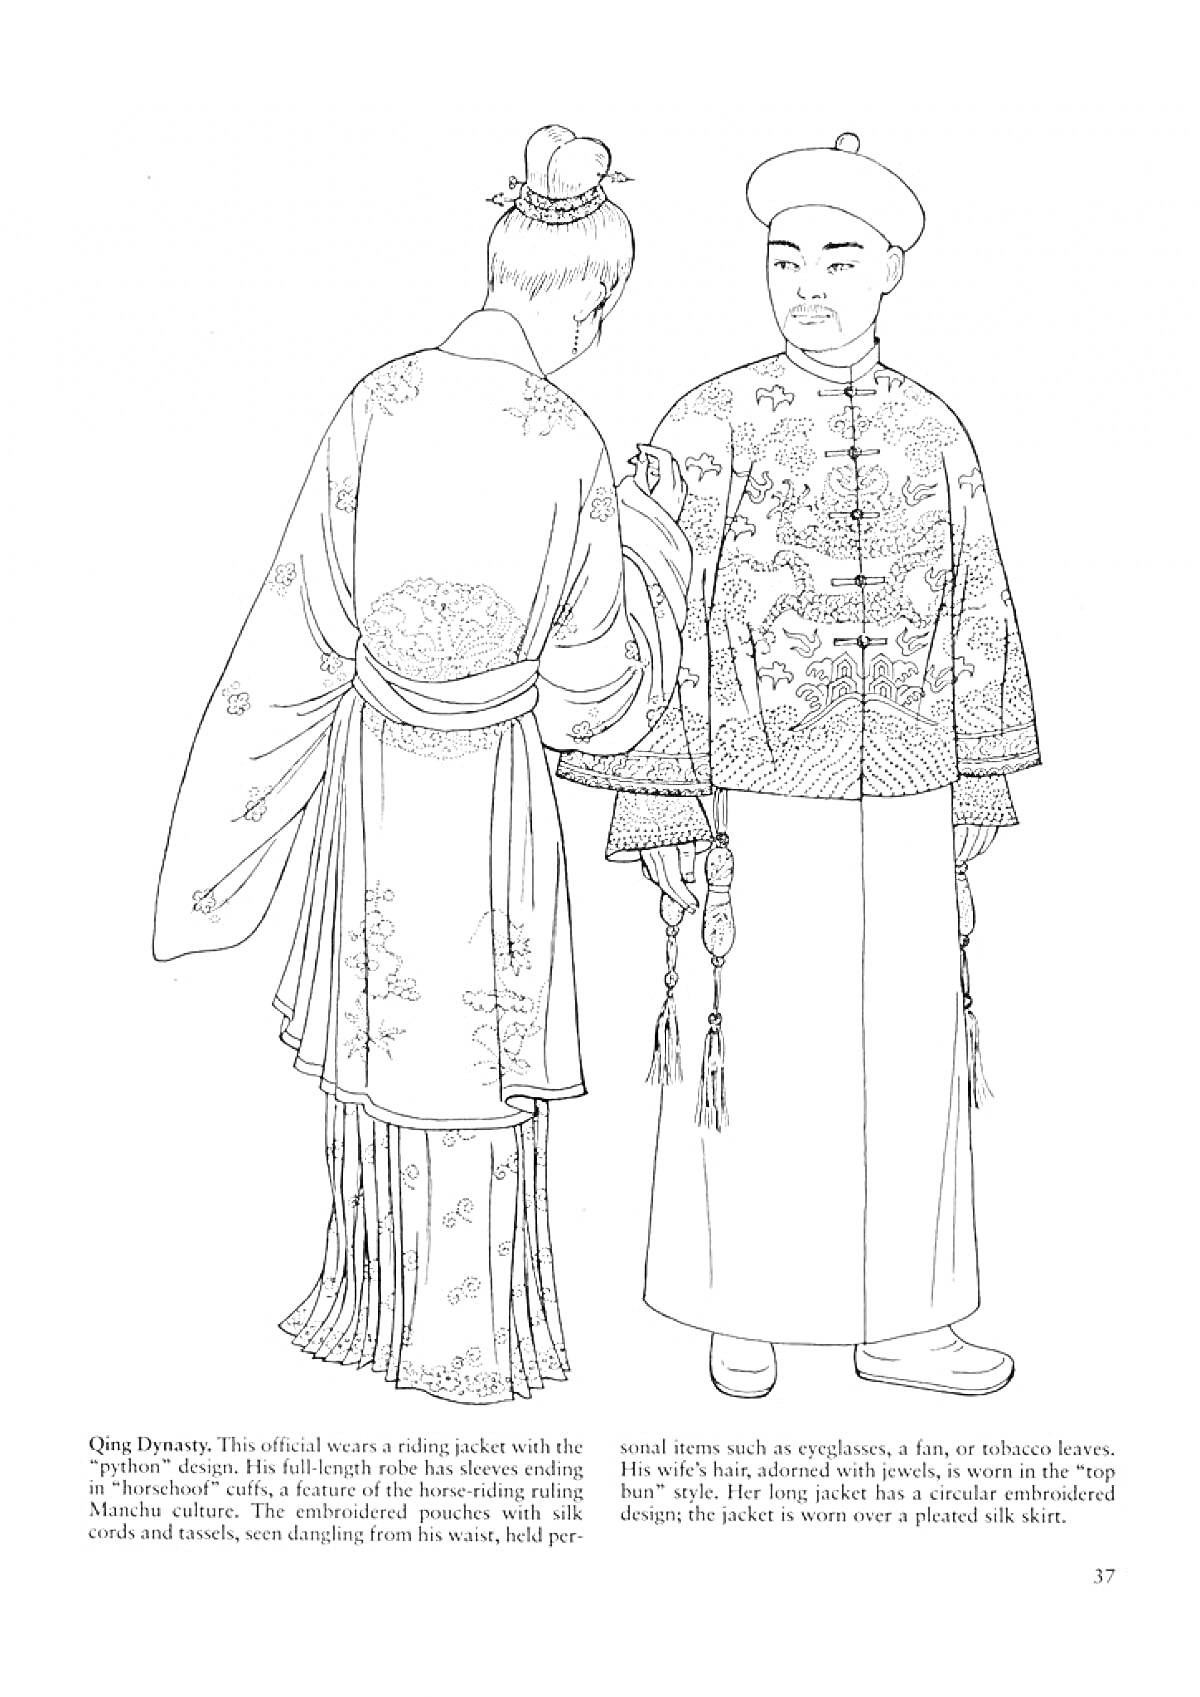 РаскраскаДети в традиционных китайских костюмах династии Цинь: мальчик и девочка в длинных одеждах с узорами, девочка с высоким венком на голове